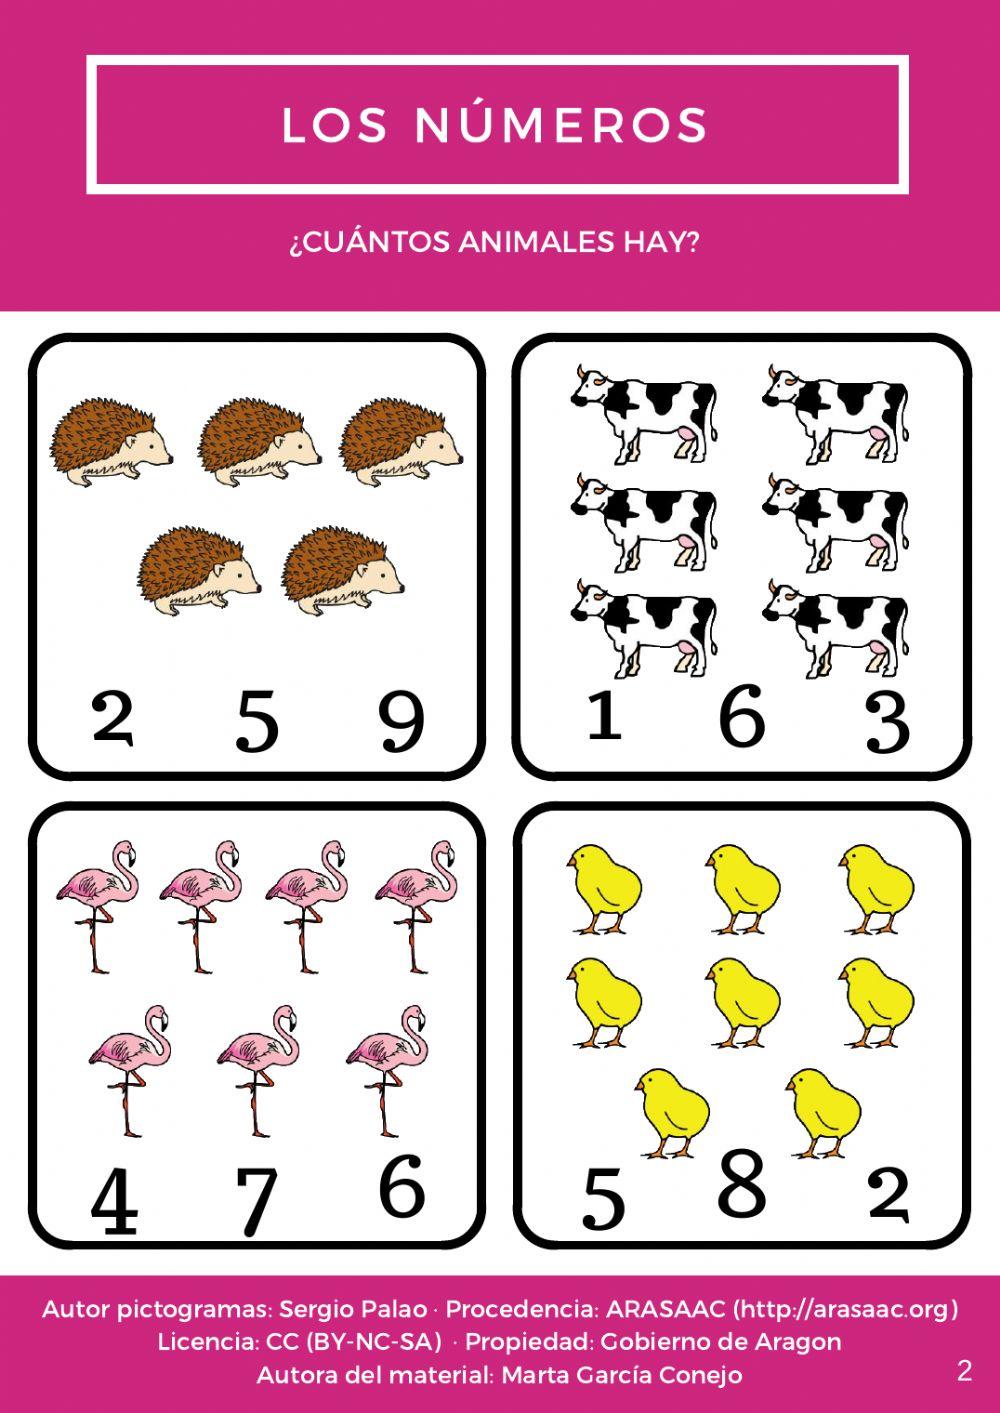 ¿Cuántos animales hay?